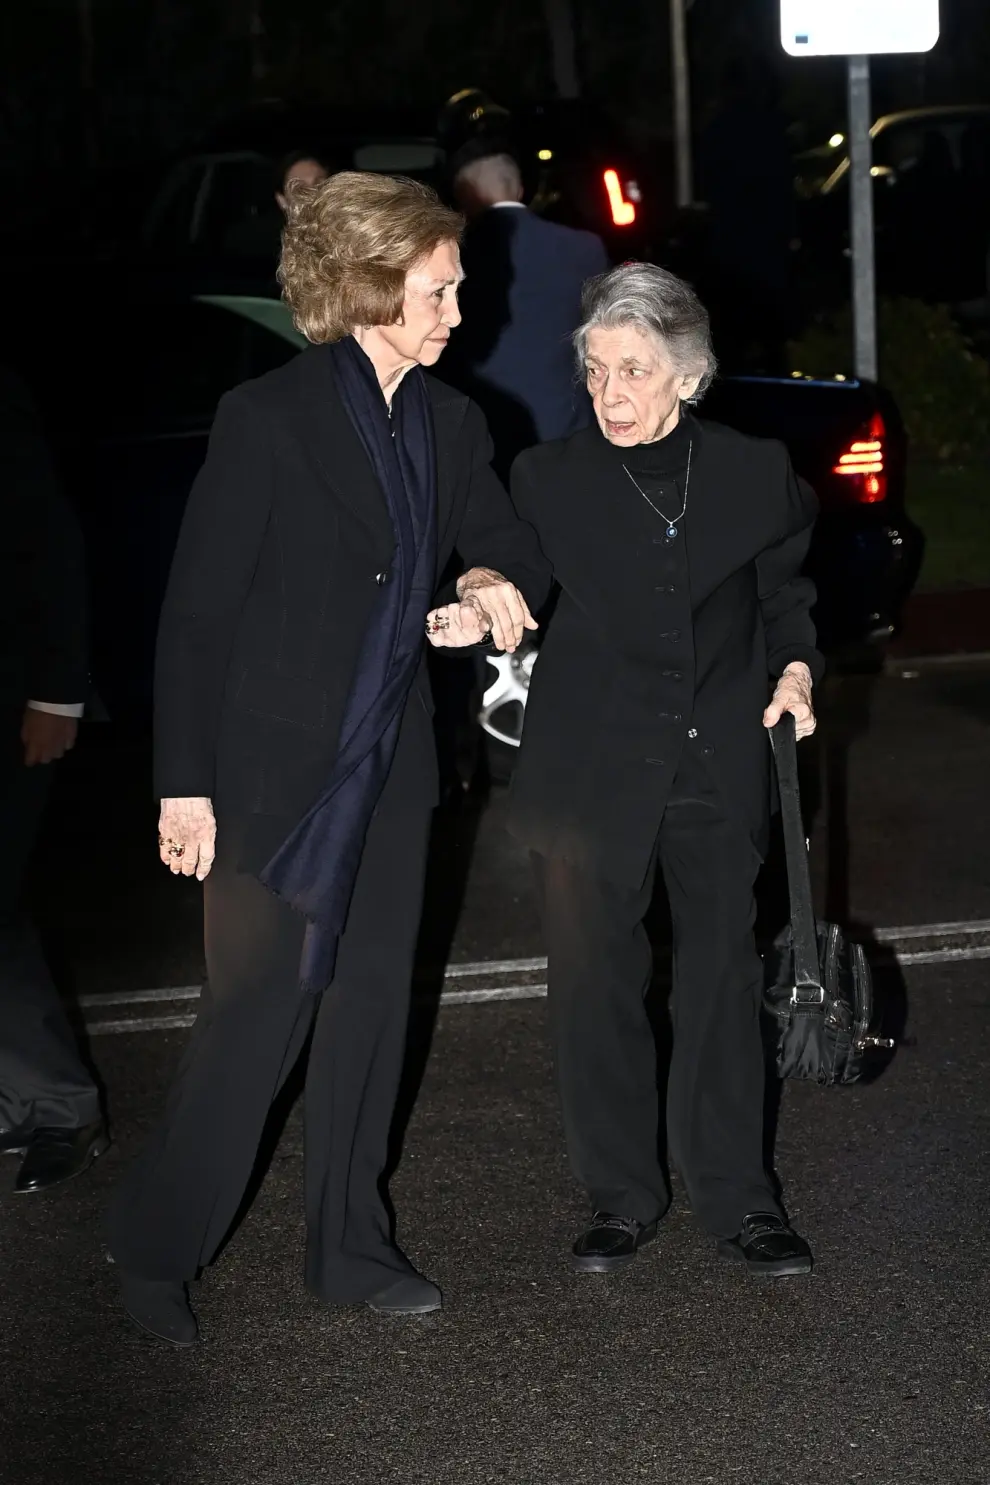 La reina Sofía llegando junto a su hermana, Irene de Grecia